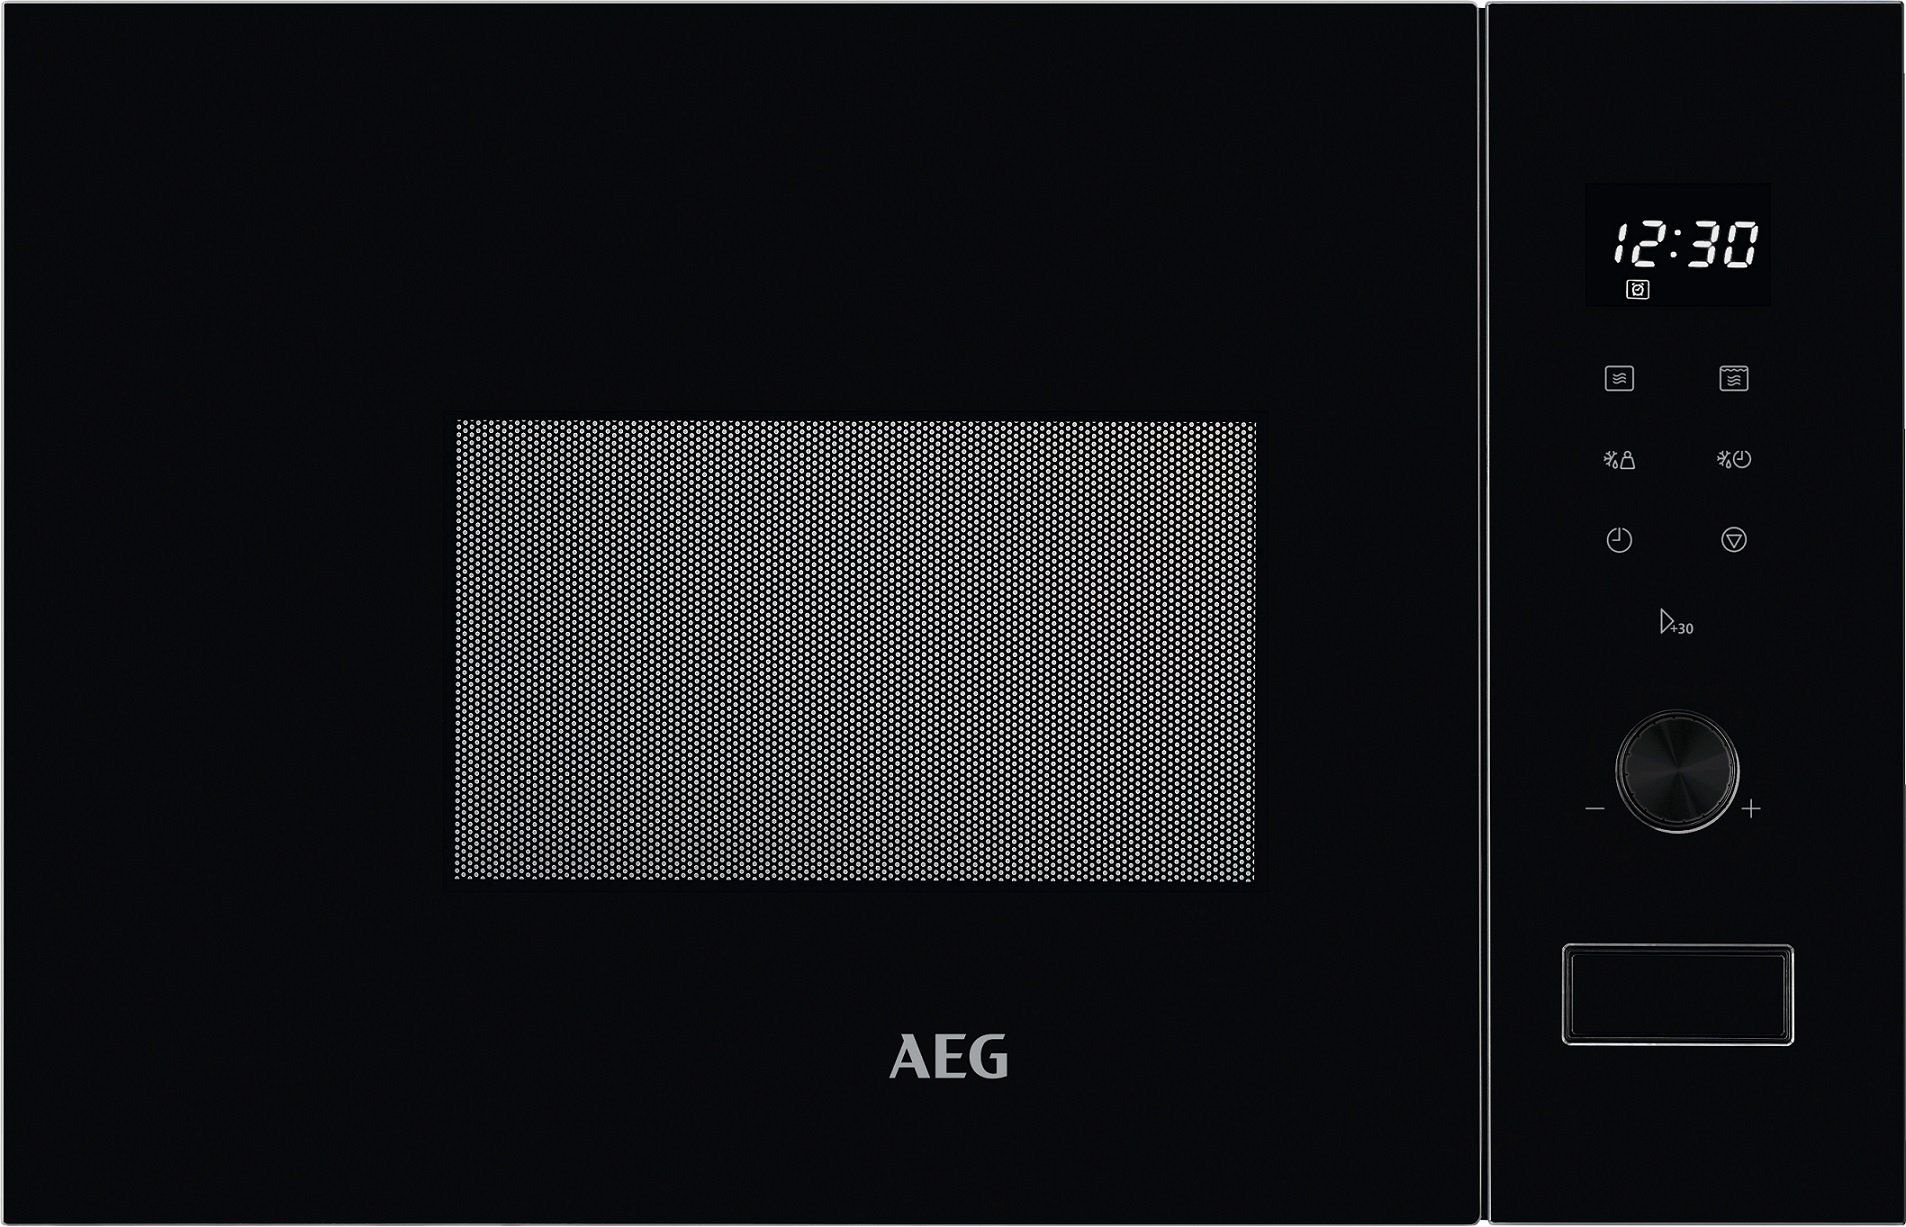 Микроволновая печь AEG MSB2057D-B 20л. 800Вт черный (встраиваемая)